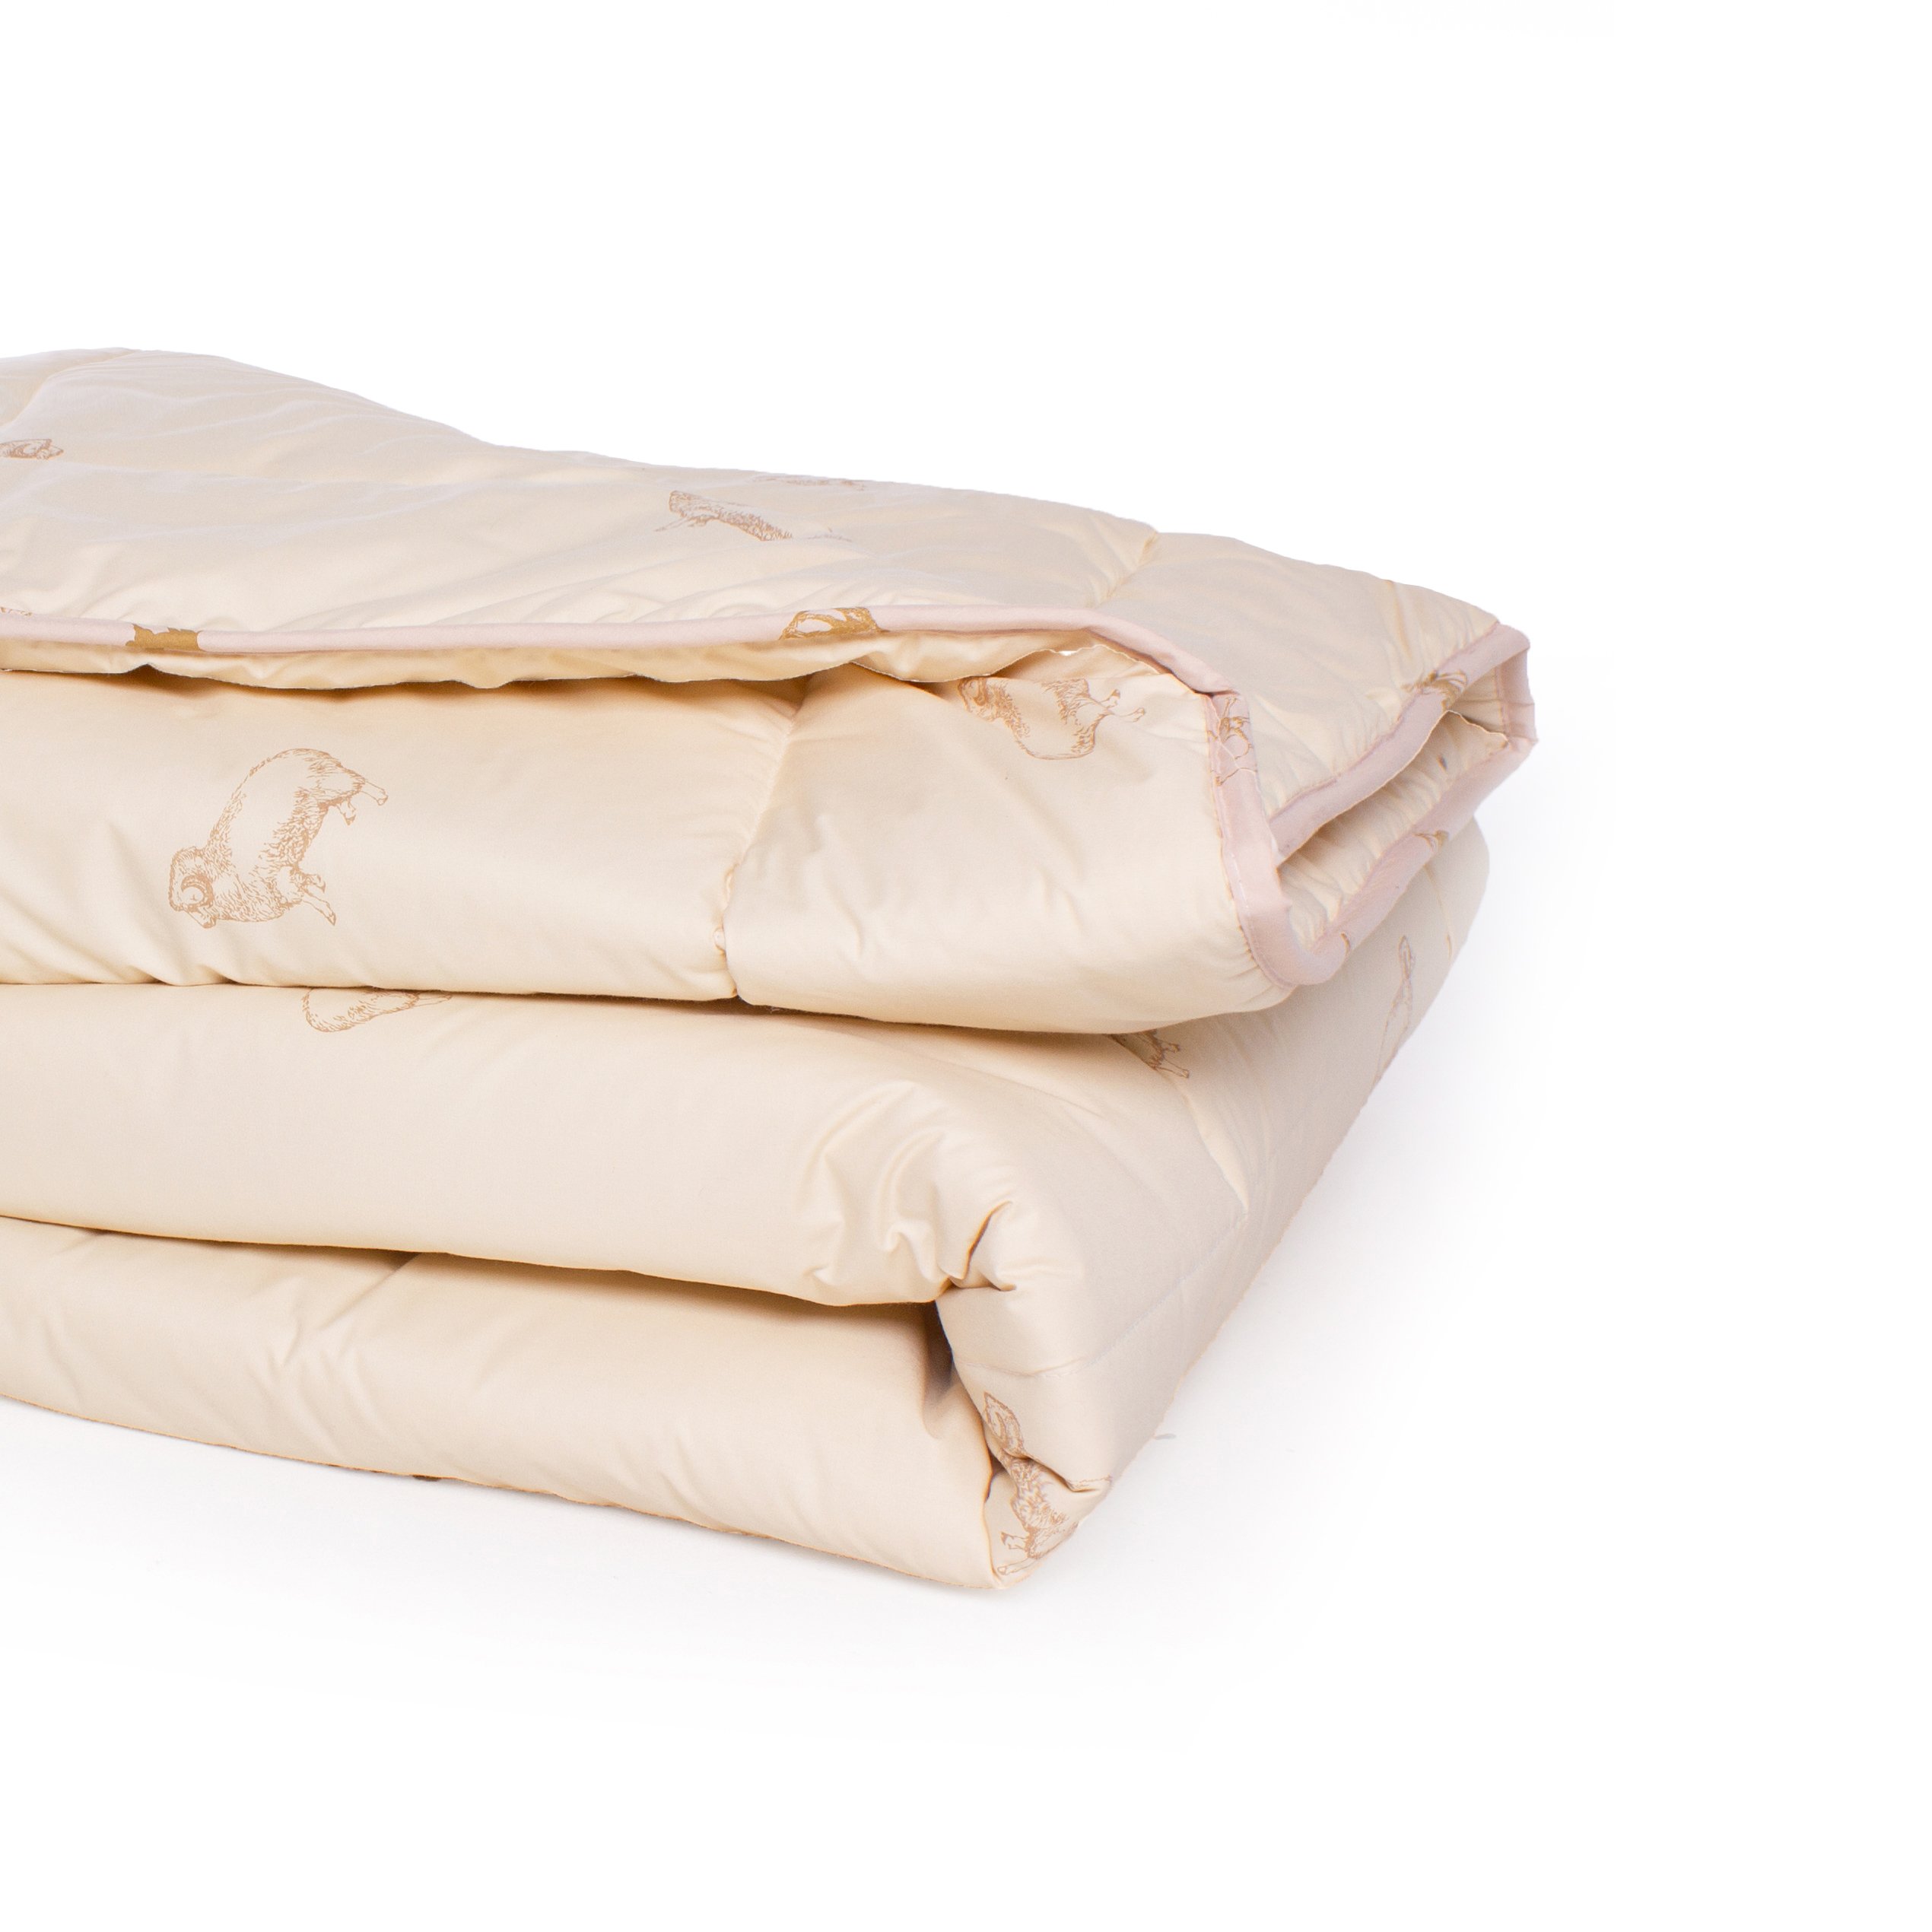 Одеяло шерстяное MirSon Gold Camel №023, демисезонное, 200x220 см, кремовое - фото 3